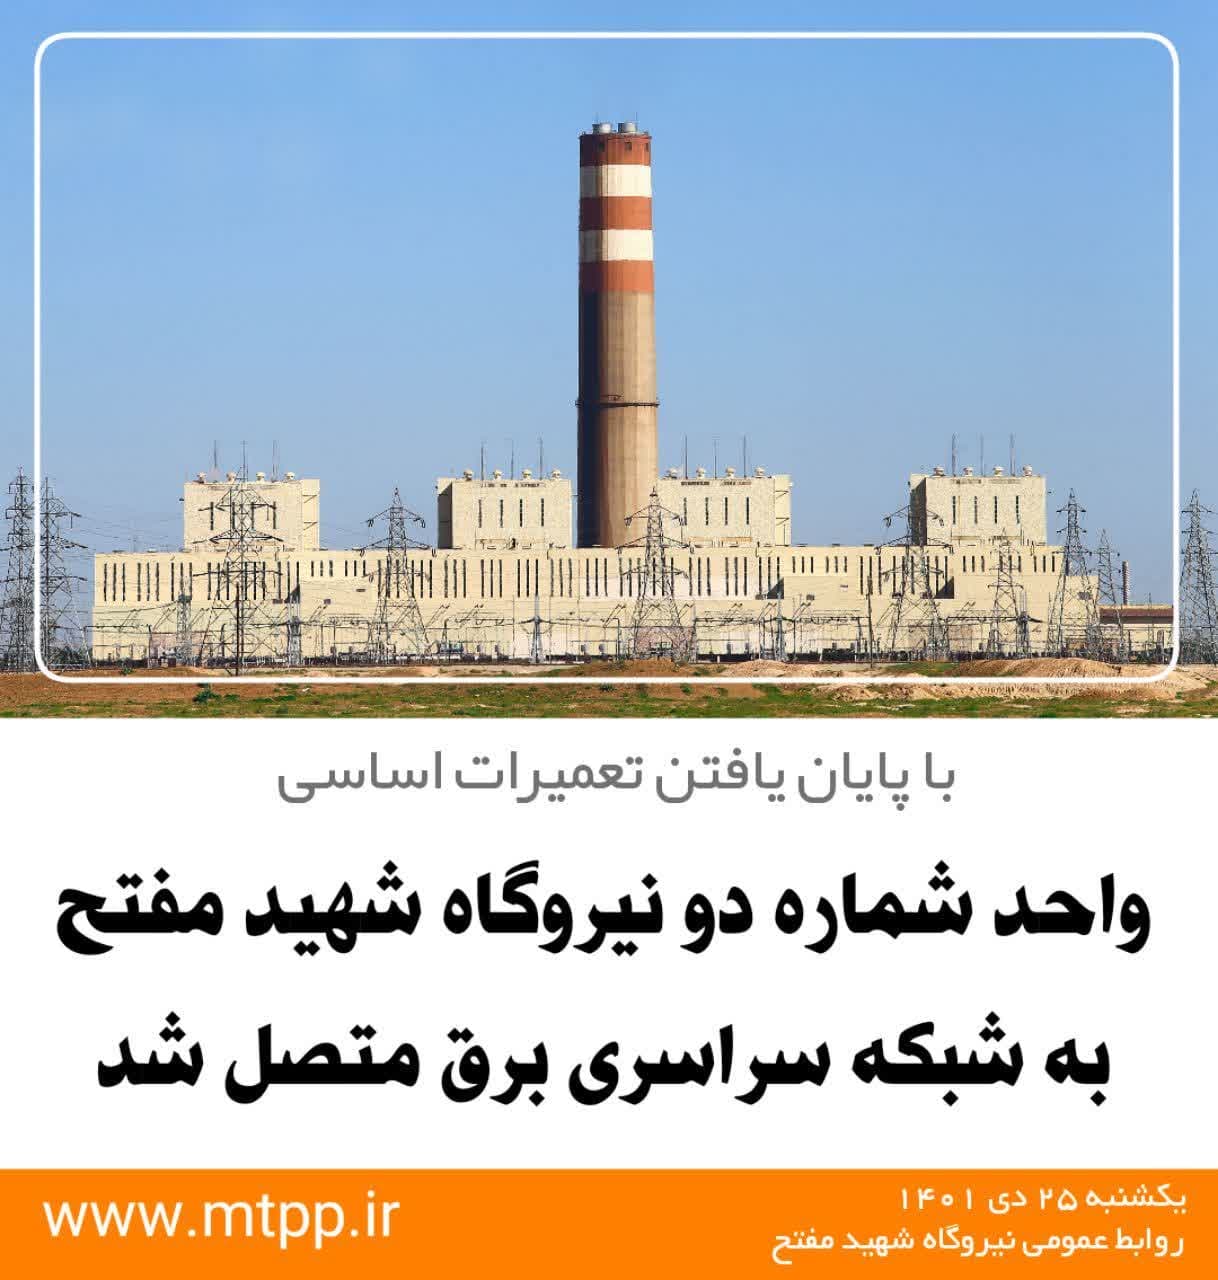 واحد شماره دو نیروگاه شهید مفتح به شبکه سراسری متصل شد